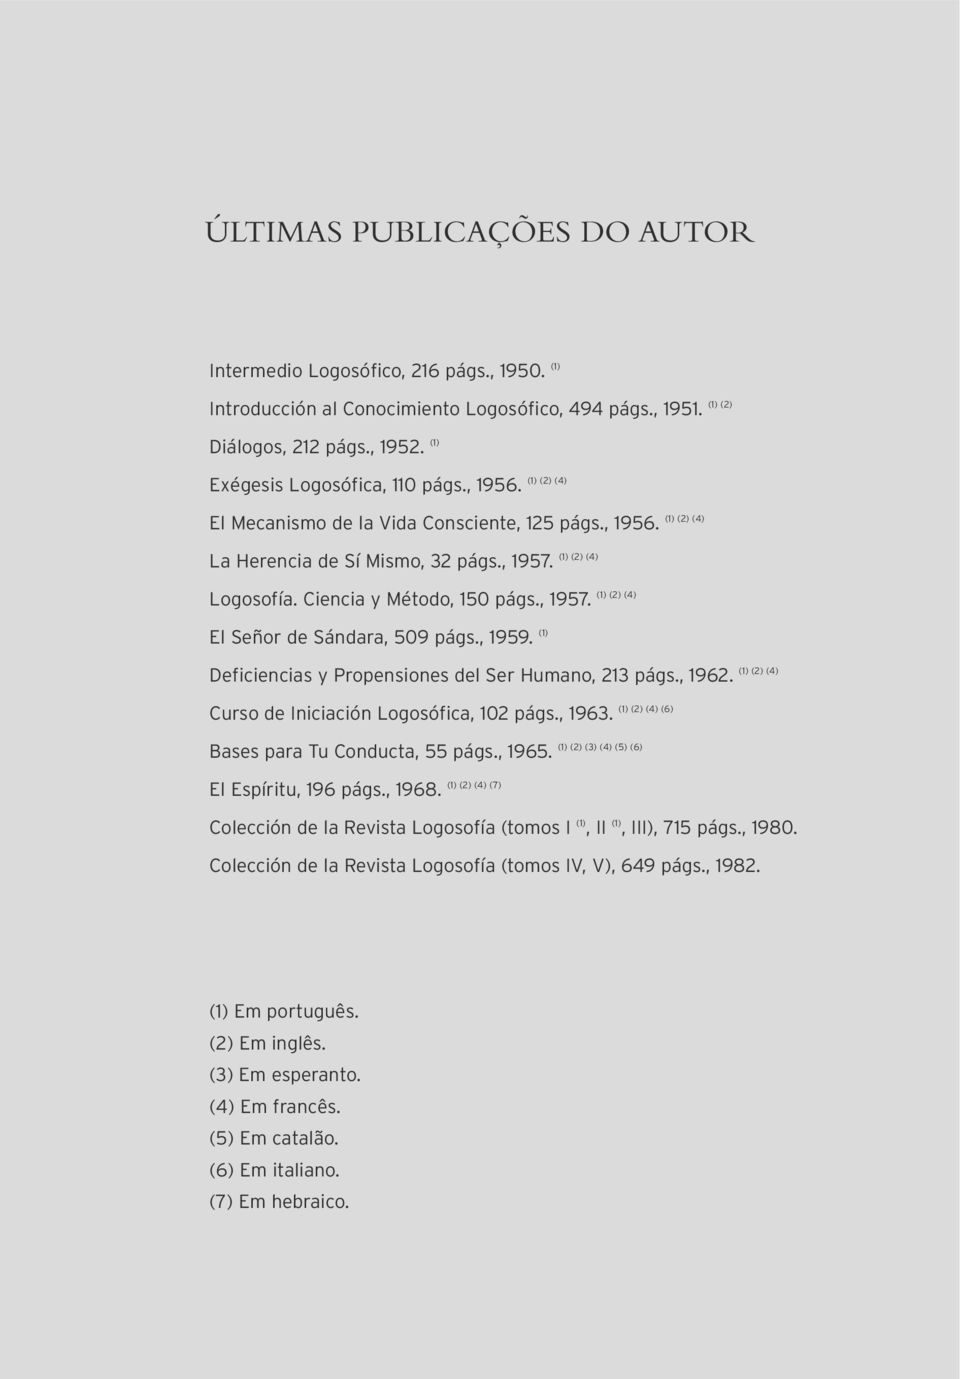 , 1959. (1) (1) (2) (4) (1) (2) (4) Deficiencias y Propensiones del Ser Humano, 213 págs., 1962. Curso de Iniciación Logosófica, 102 págs., 1963. Bases para Tu Conducta, 55 págs., 1965.